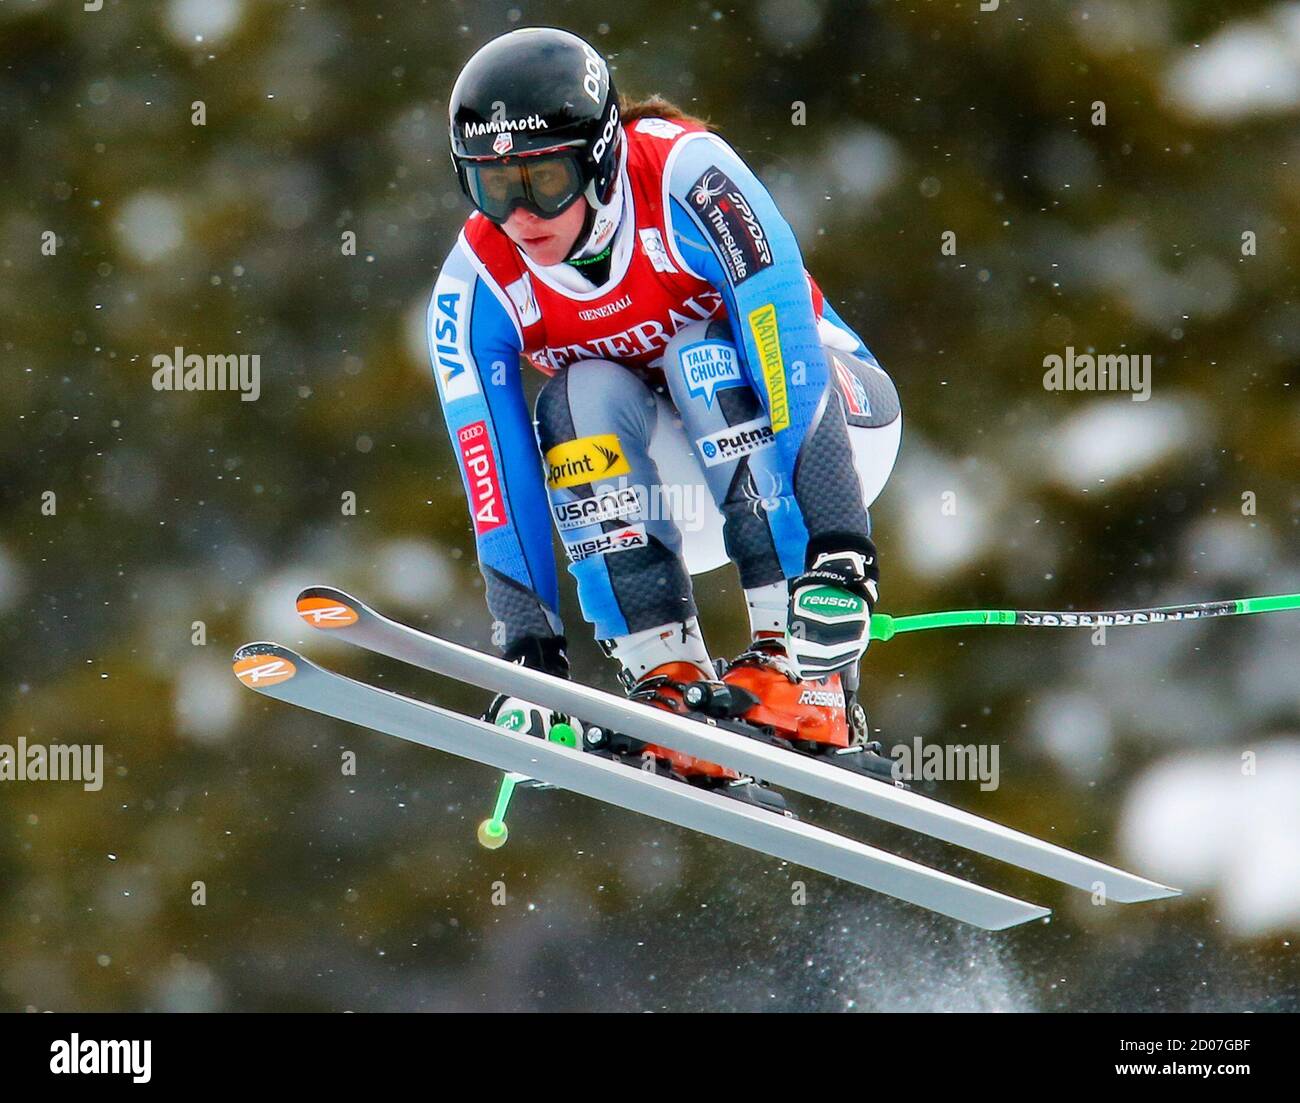 Stacey Cook degli Stati Uniti prende il volo durante l'allenamento di sci alpino per la Coppa del mondo delle Donne Downhill nel lago Louise, Alberta, 29 novembre 2012. REUTERS/Mike Blake (CANADA - Tags: SCI SPORTIVO) Foto Stock